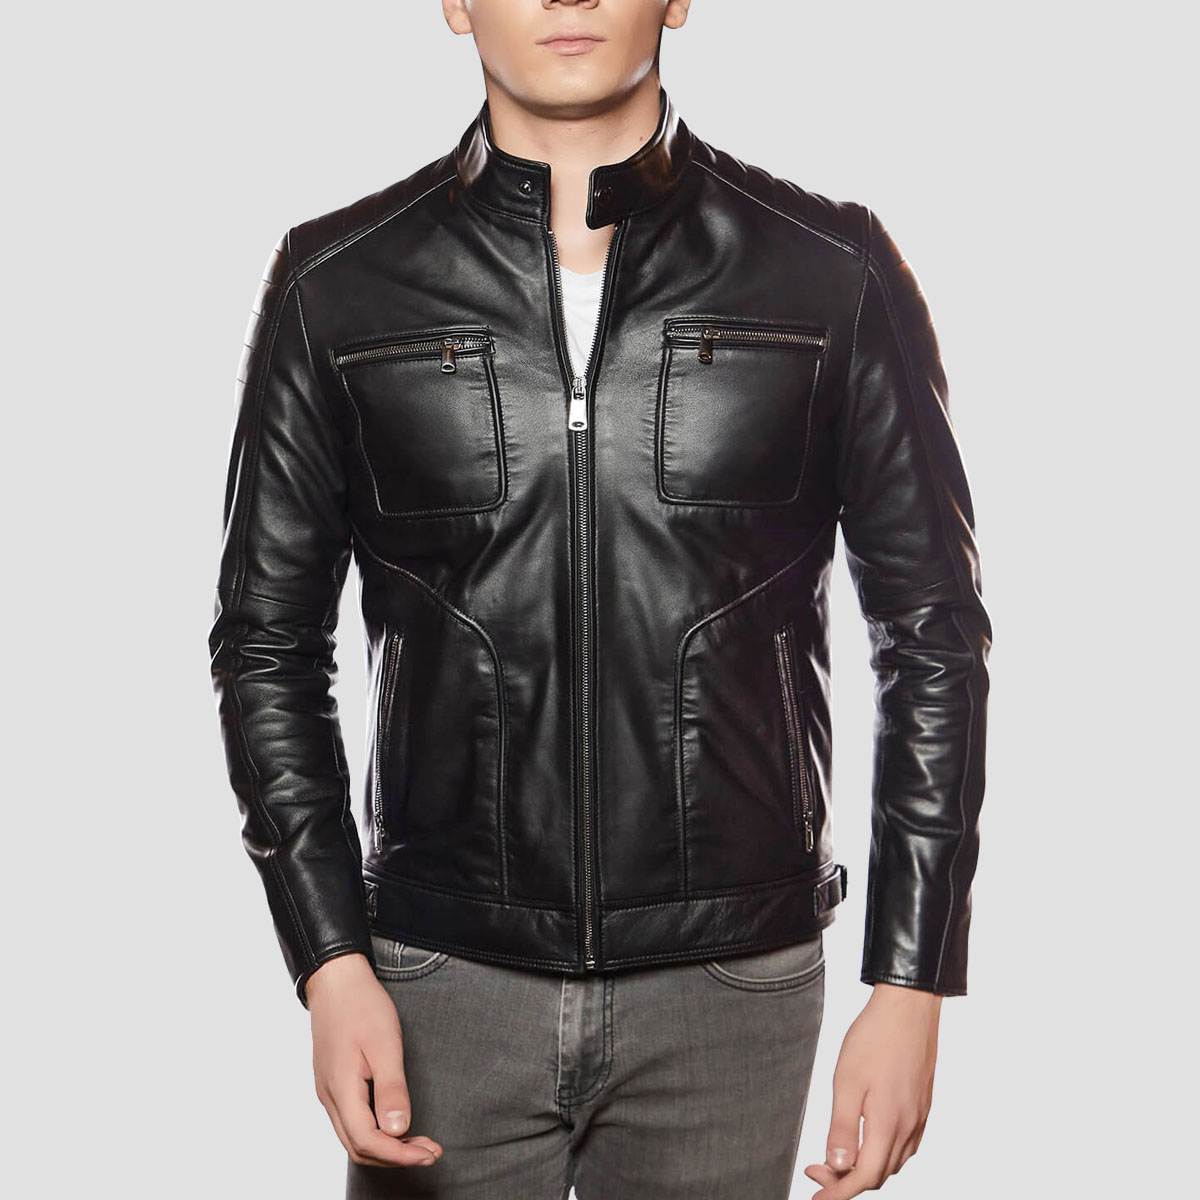 Modish Black Leather Moto Jacket - The Vintage Leather